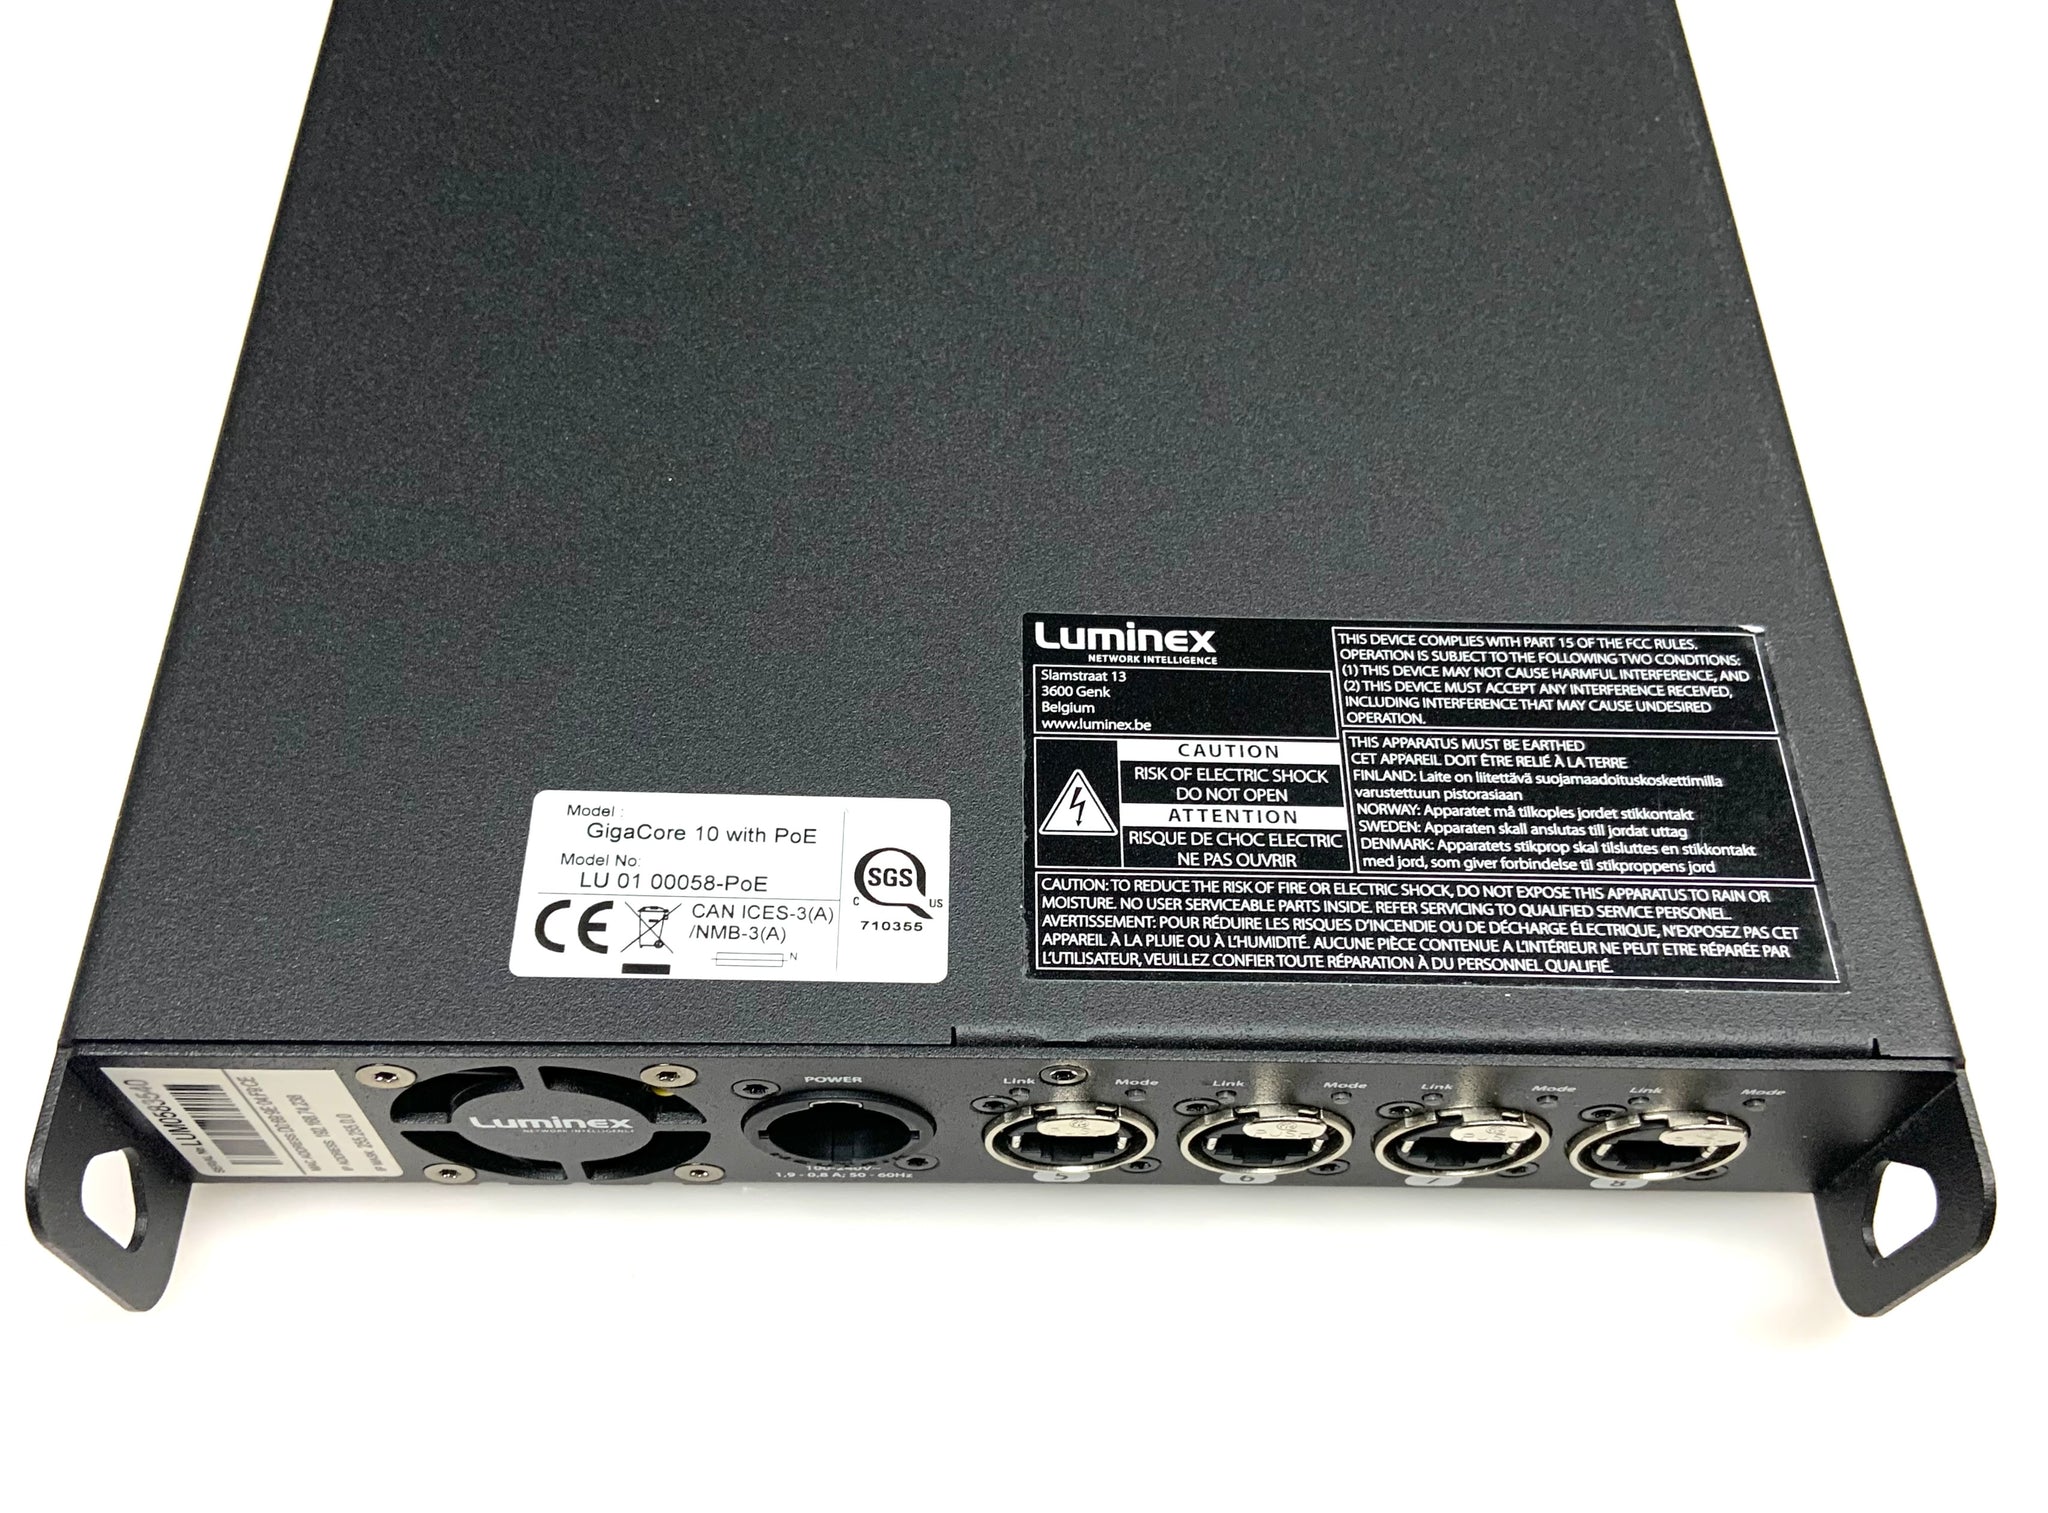 Luminex GigaCore 10 PoE Ethernet Switch - $2195 - Model#: LU